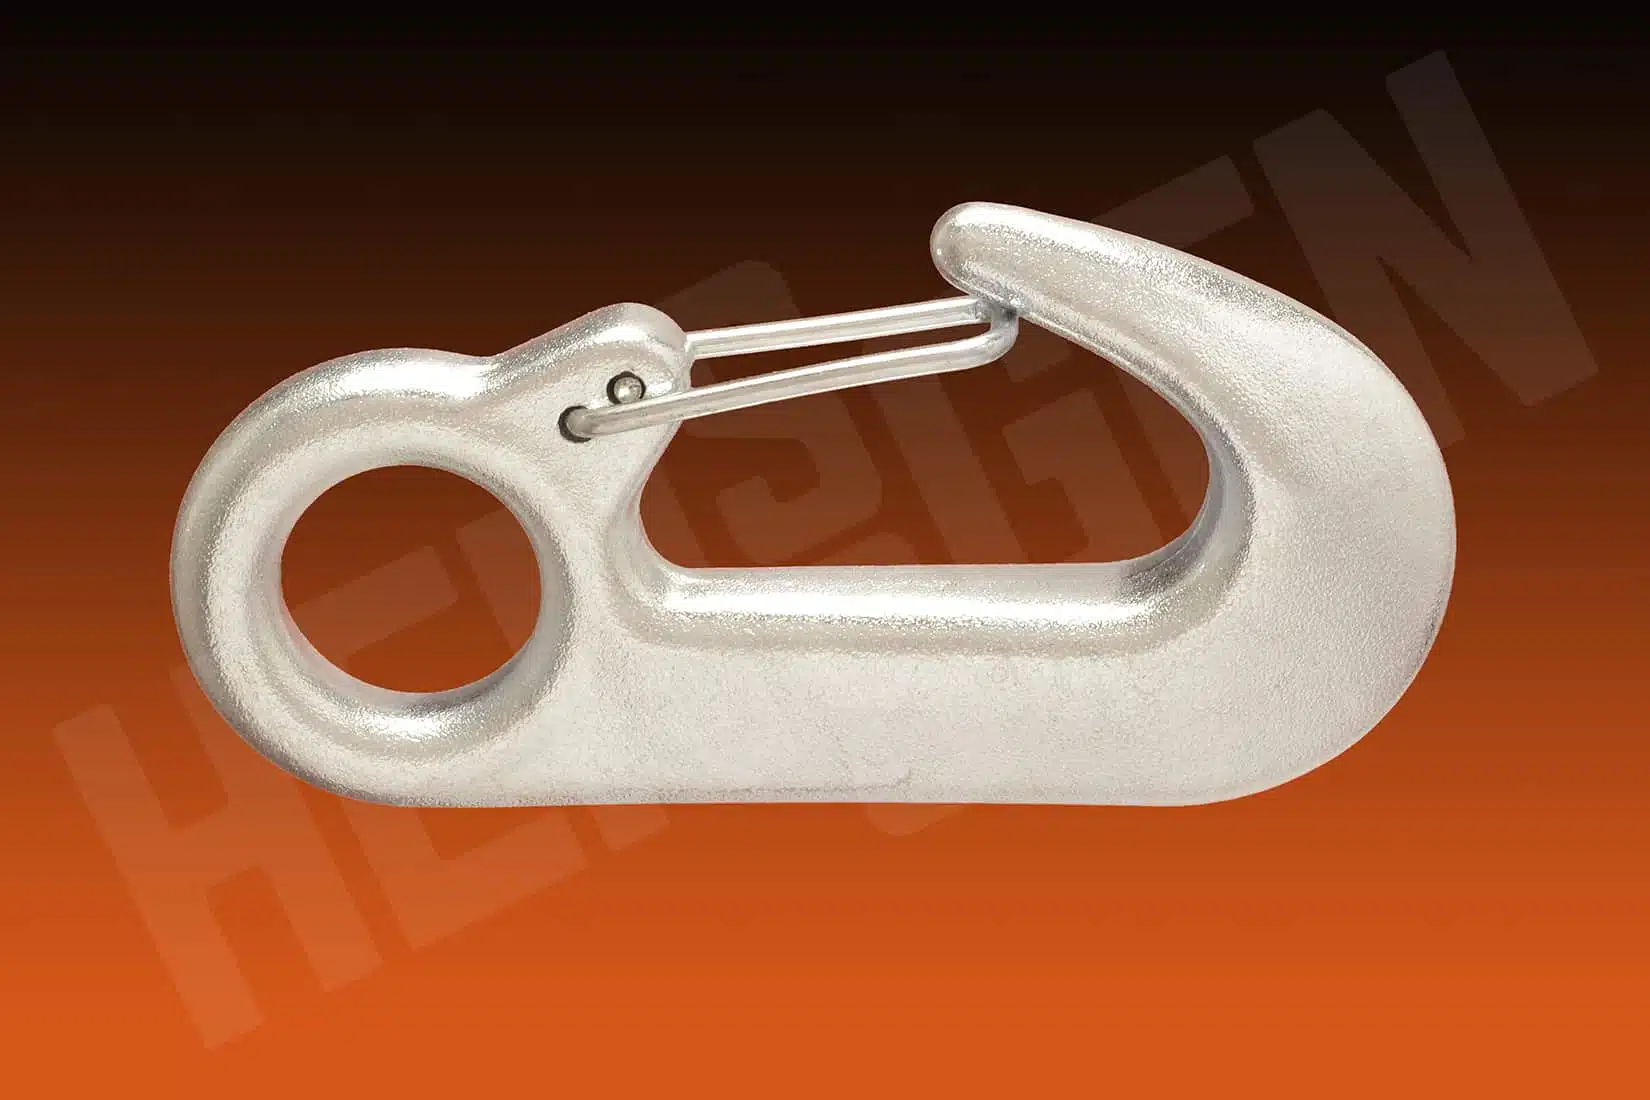 Forged Steel Swivel Snap Hook | ProClimb